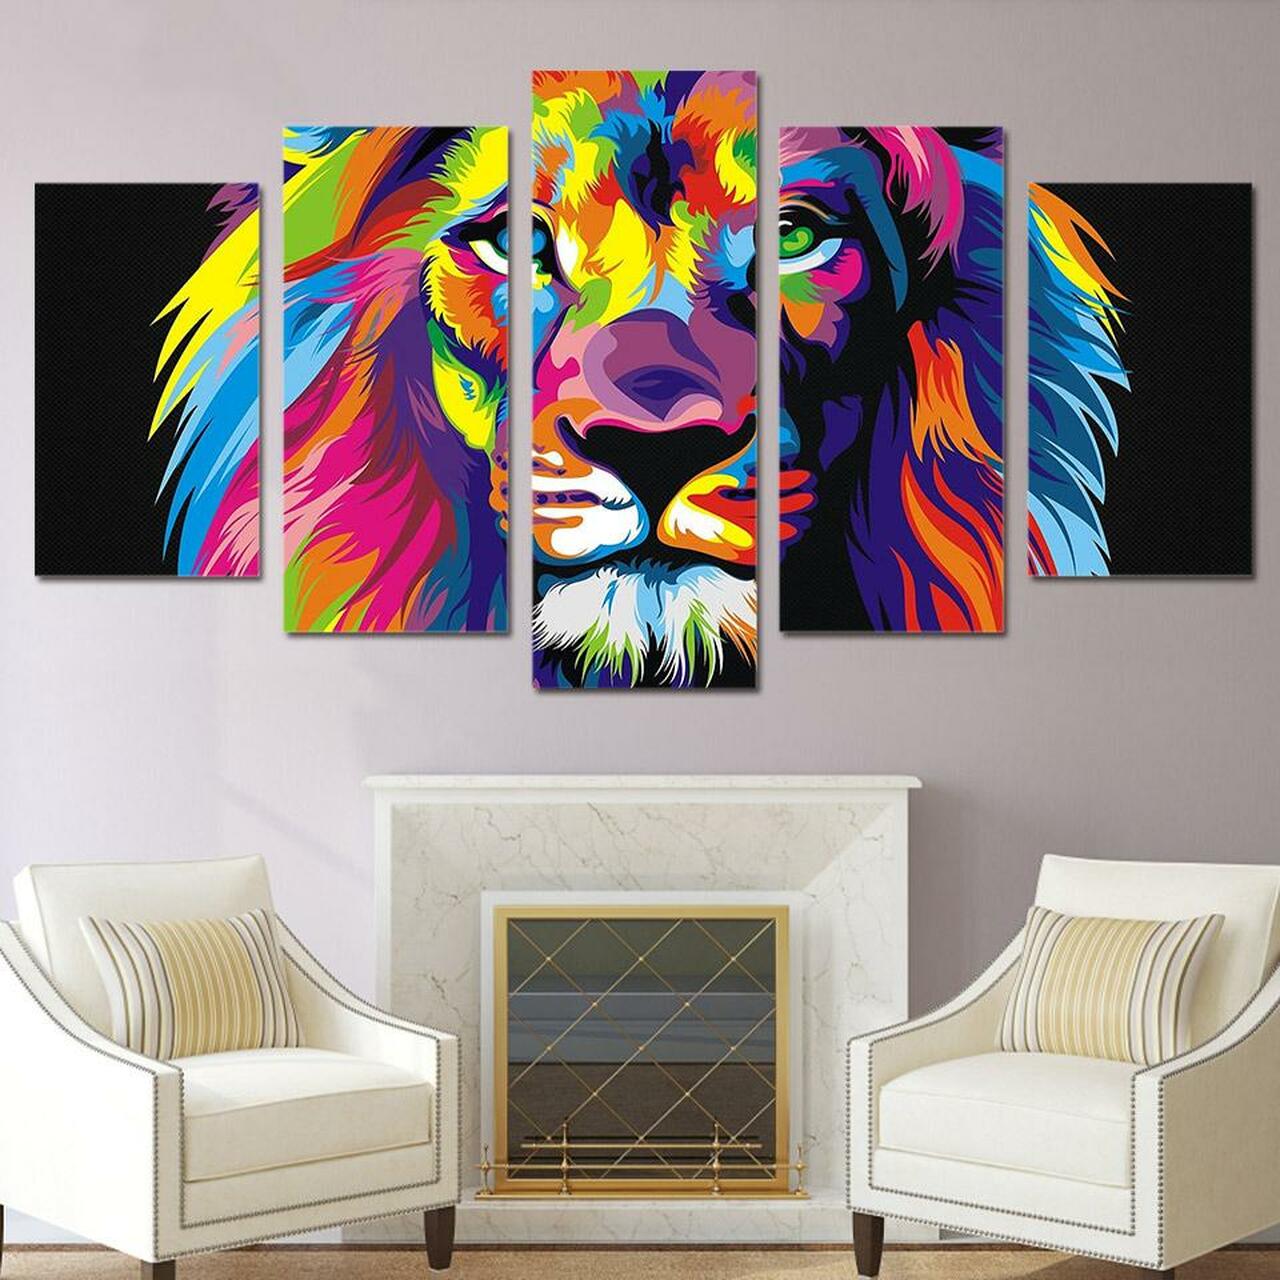 colorful lion 5 pices peinture sur toile impression sur toile toile art pour la dcoration intrieurekmlwf